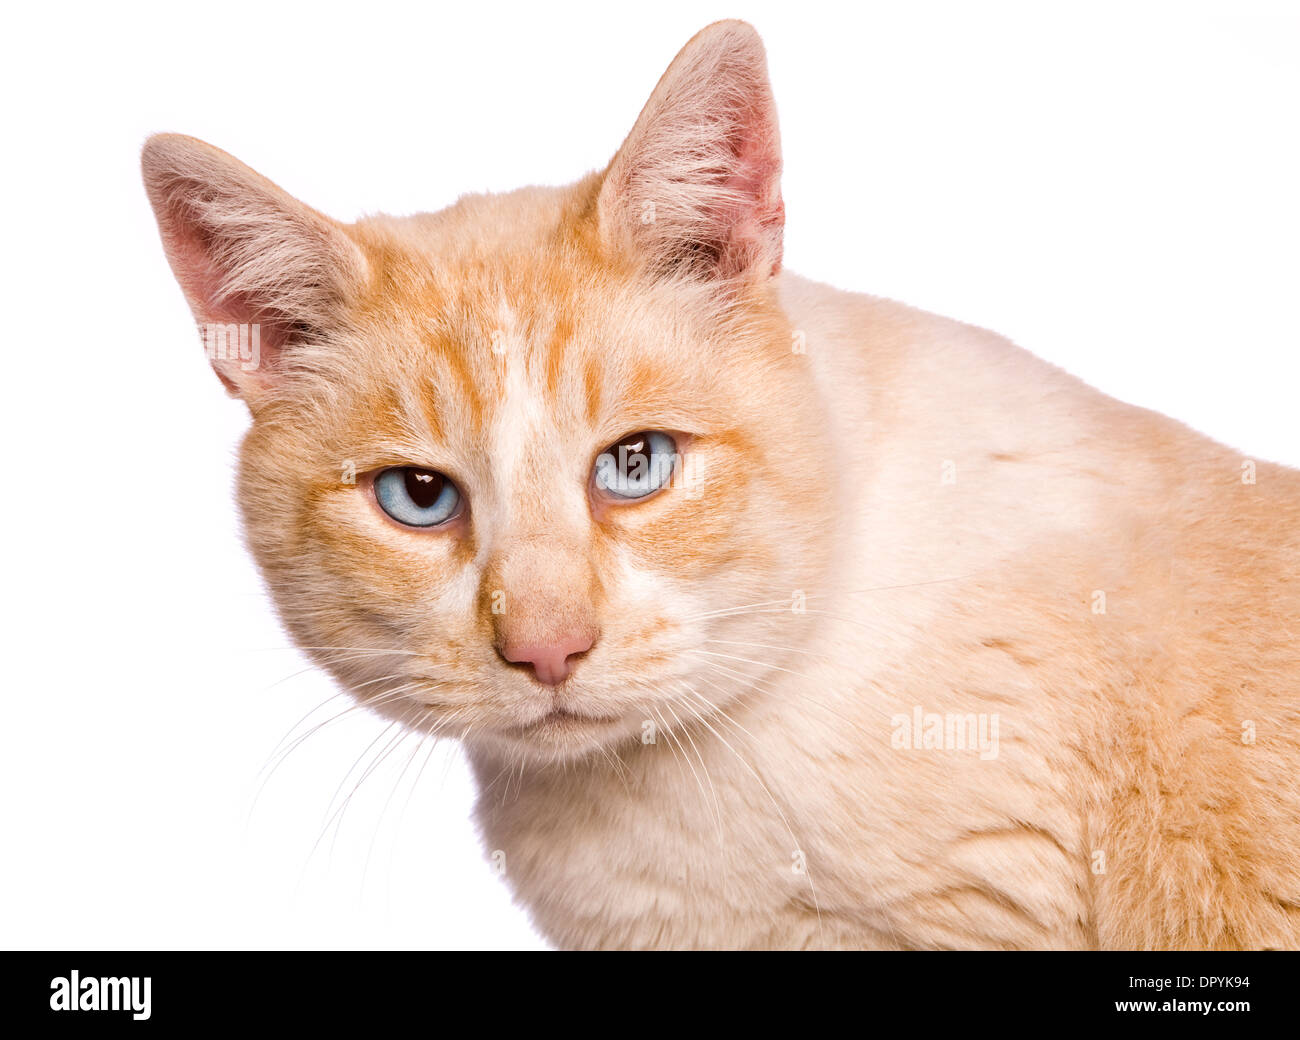 Punto rosso gatto siamese gatto cercando arrabbiato colpo alla testa isolata su sfondo bianco Foto Stock